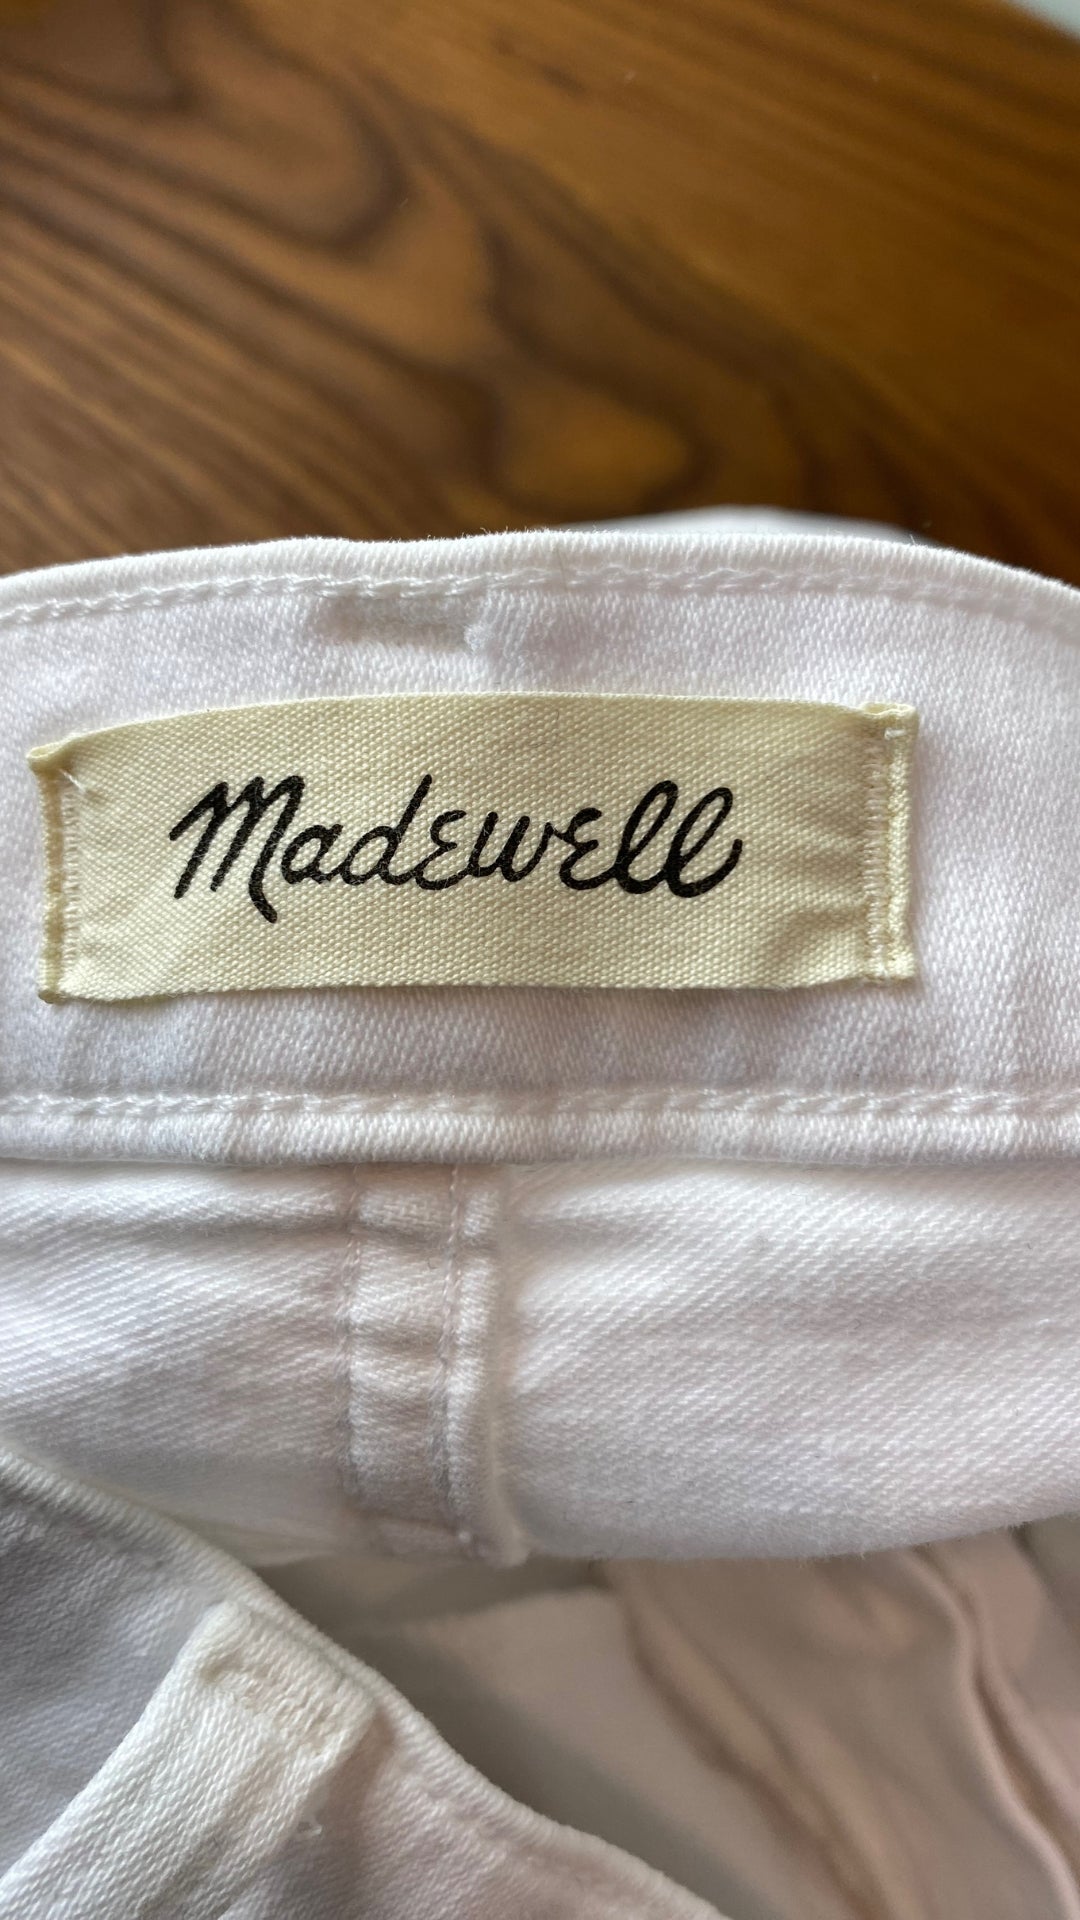 Pantalon blanc légèrement évasé Madewell, taille 28. Vue de l'étiquette de marque.